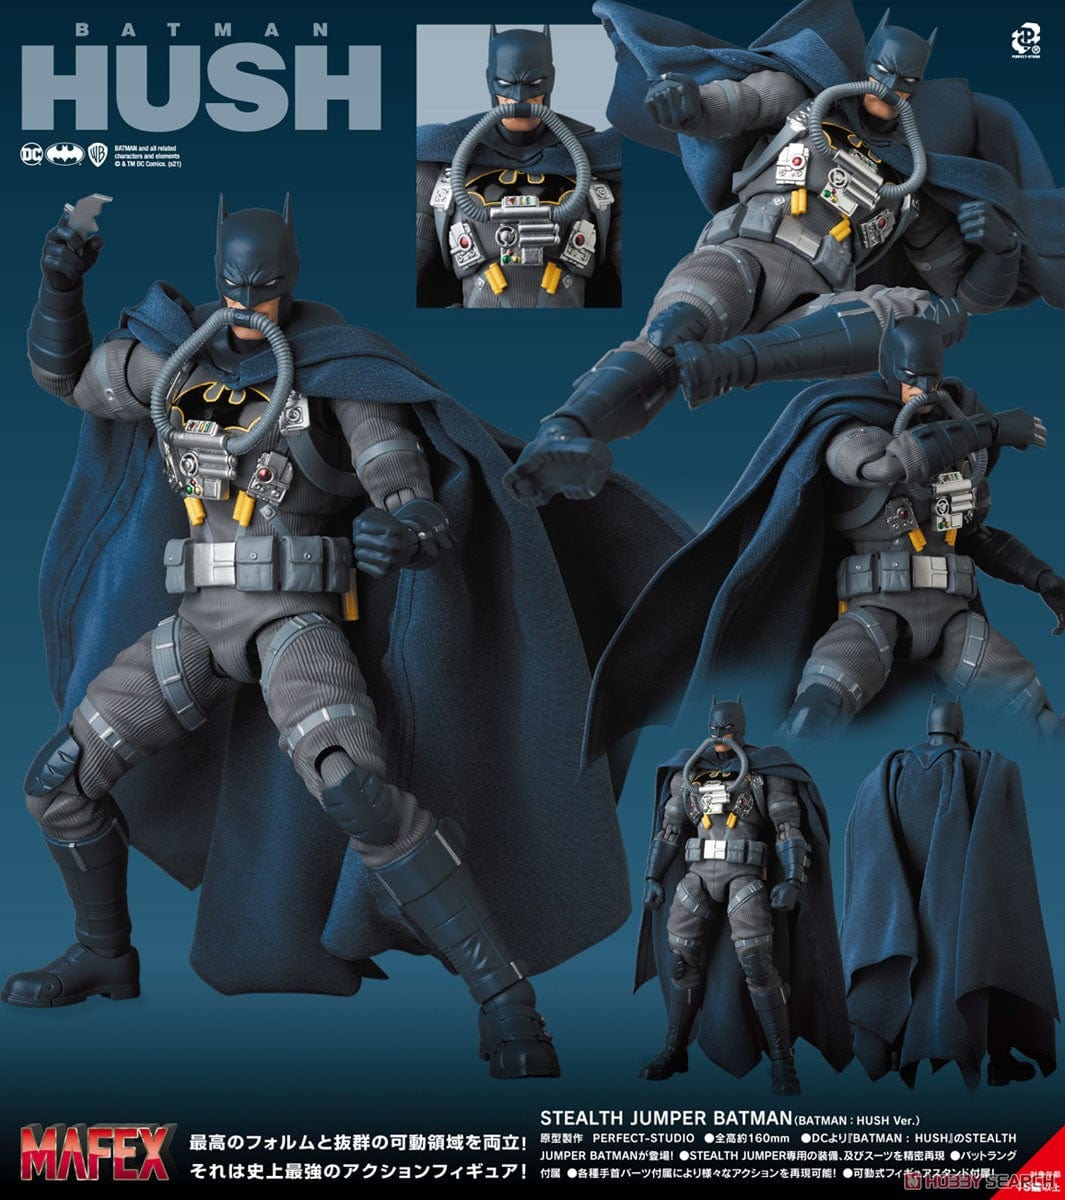 MAFEX No. 166 Batman: Hush Batman Stealth Jumper Action Figure